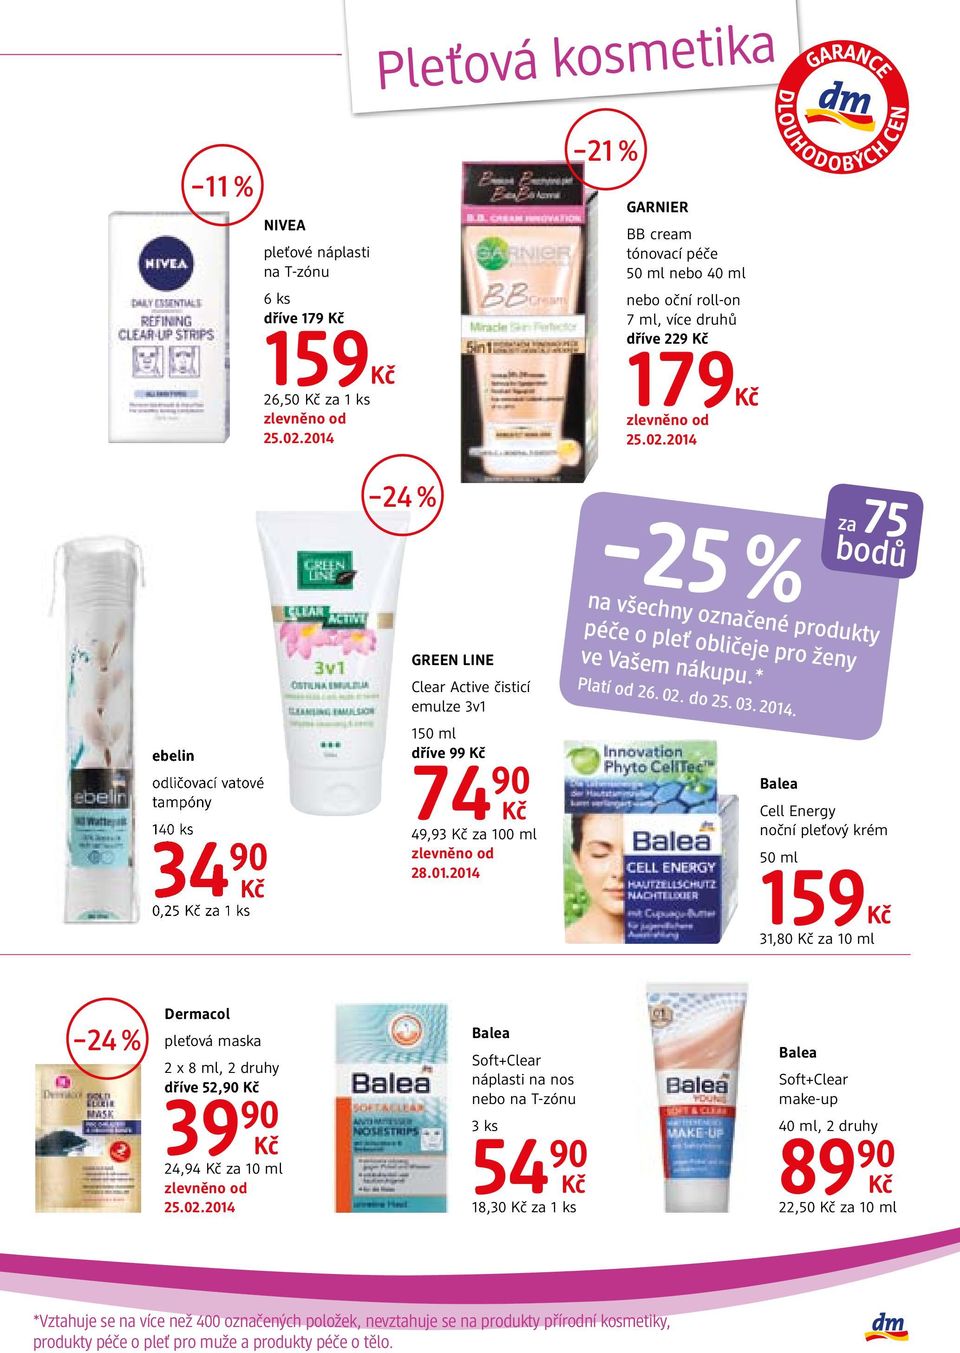 2014 na všechny označené produkty péče o pleť obličeje pro ženy ve Vašem nákupu.* Platí od 26. 02. do 25. 03. 2014.